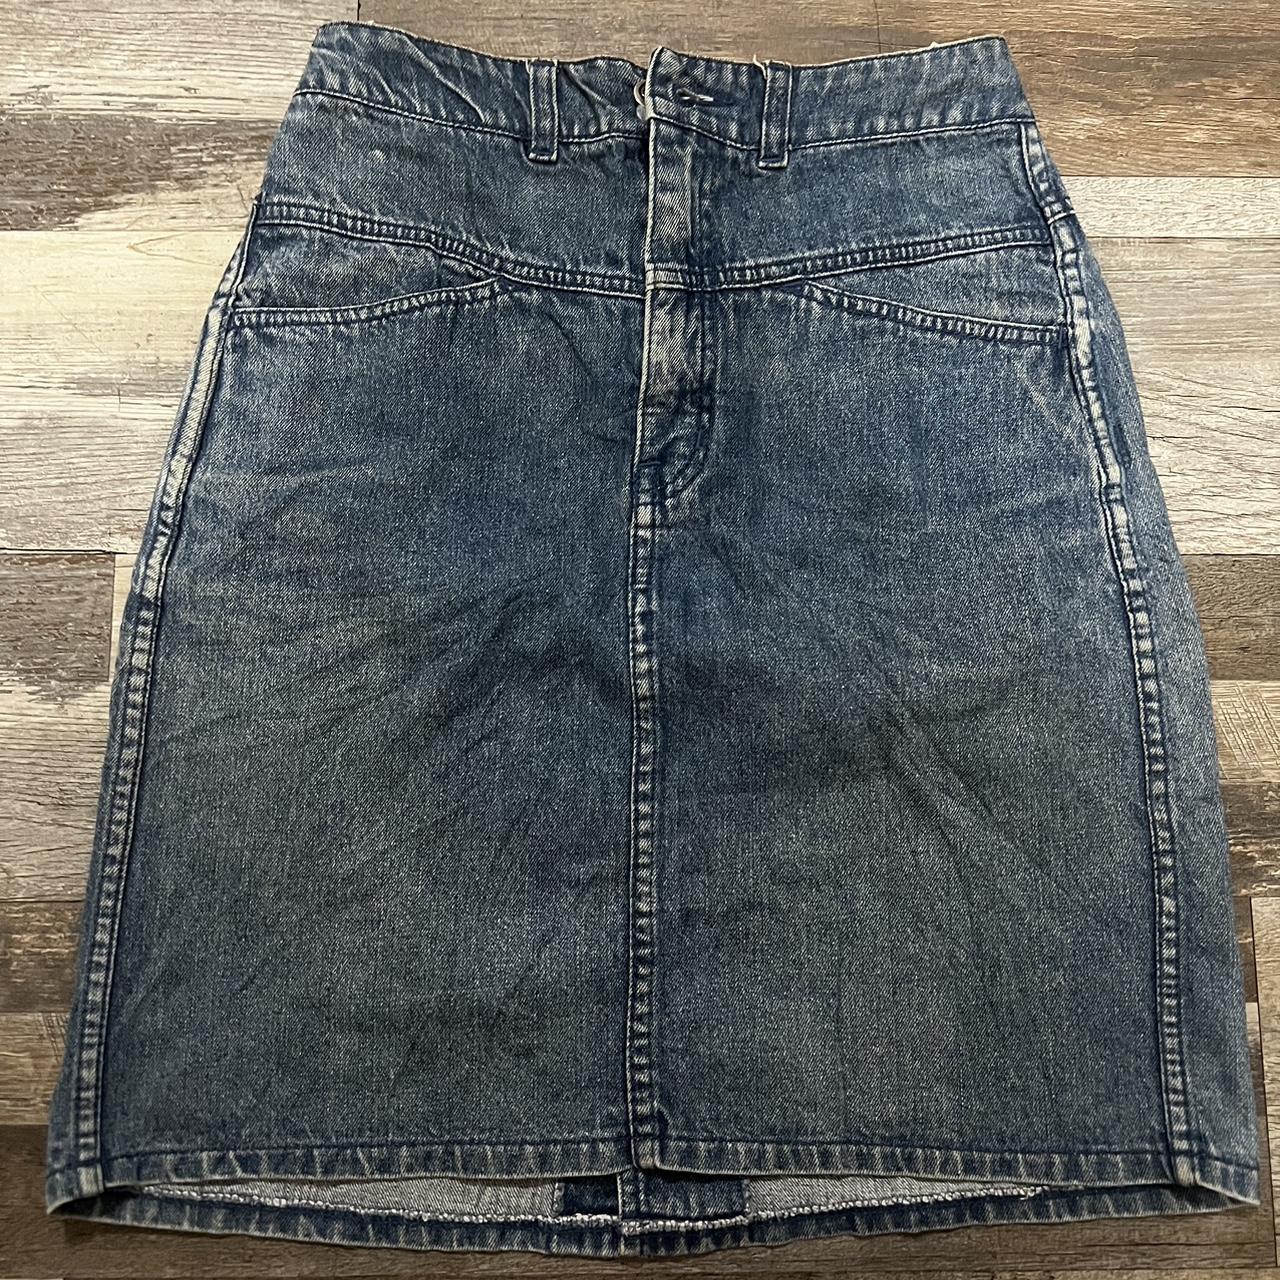 Vintage Denim Skirt . size 26x20 - Depop